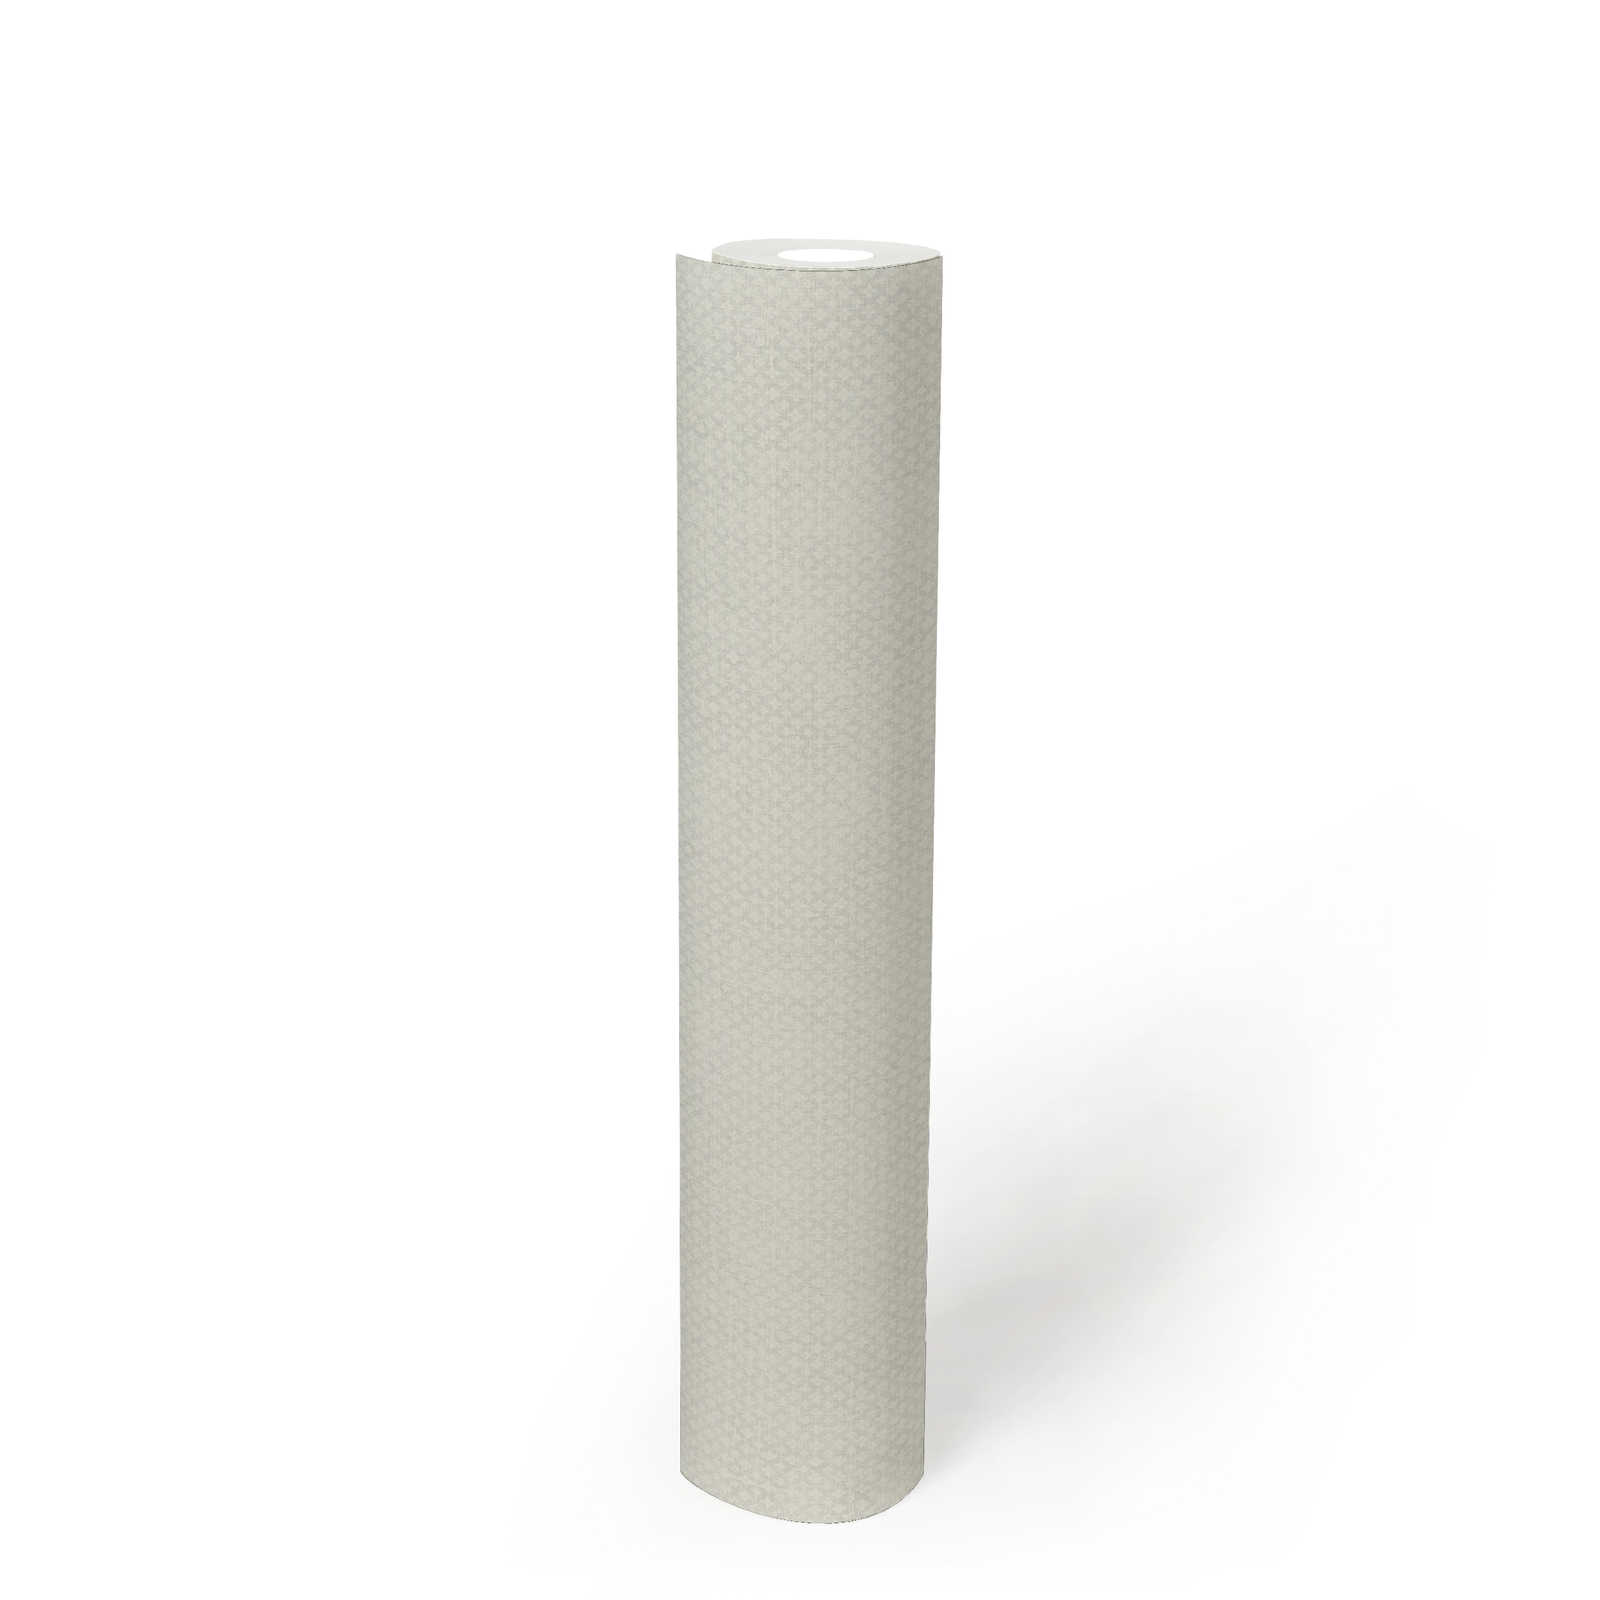             Vliesbehang met fijn structuurpatroon - grijs, wit
        